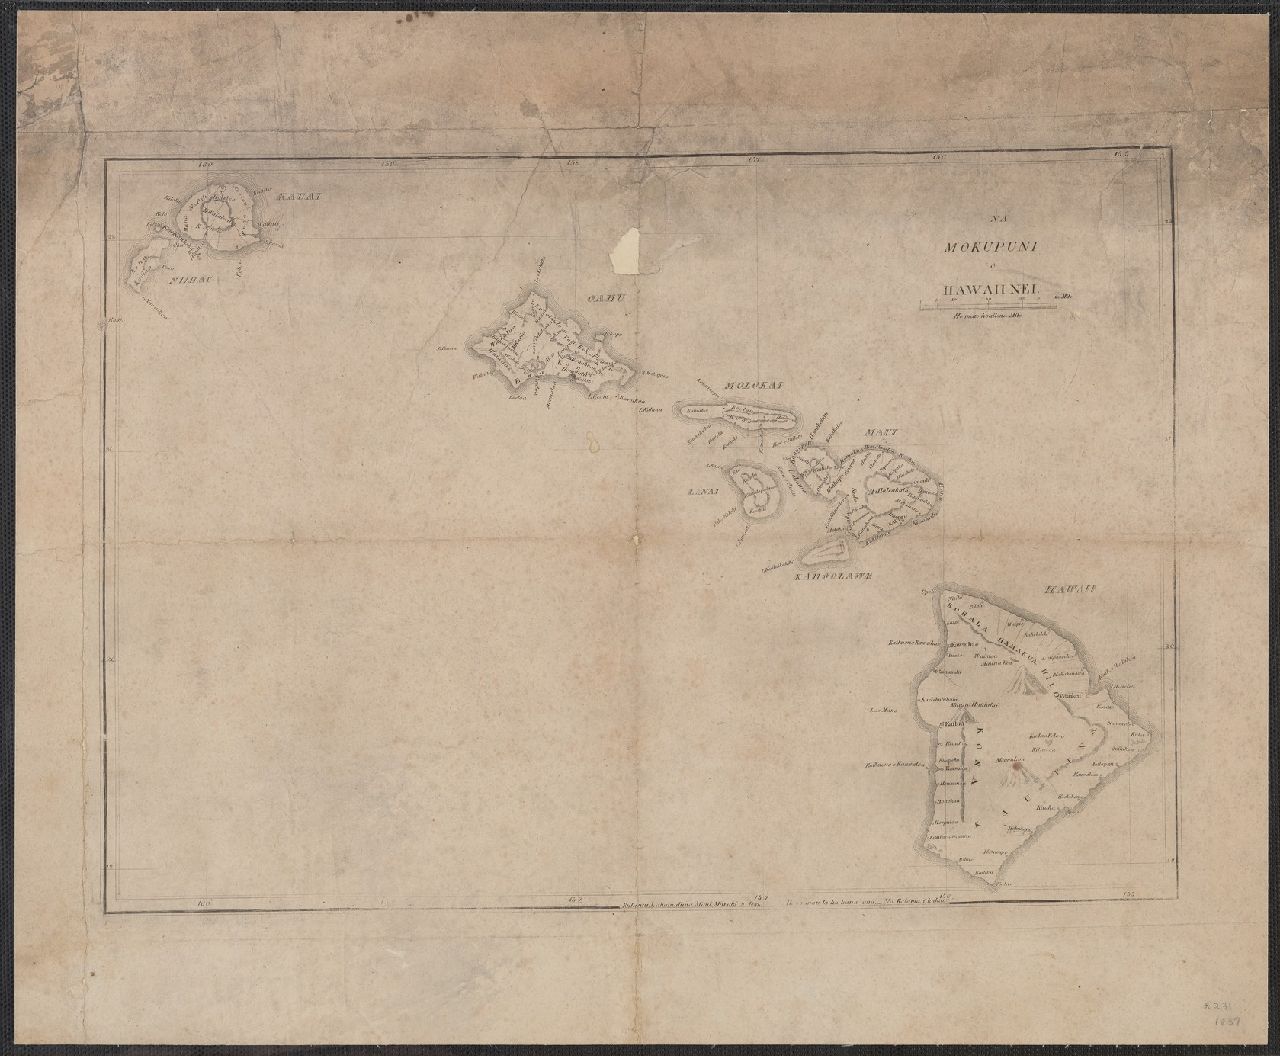 1837 Na Mokupuni o Hawaii Nei. (The Hawaiian Islands) Na Kalama i kakau (drawn by Kalama)